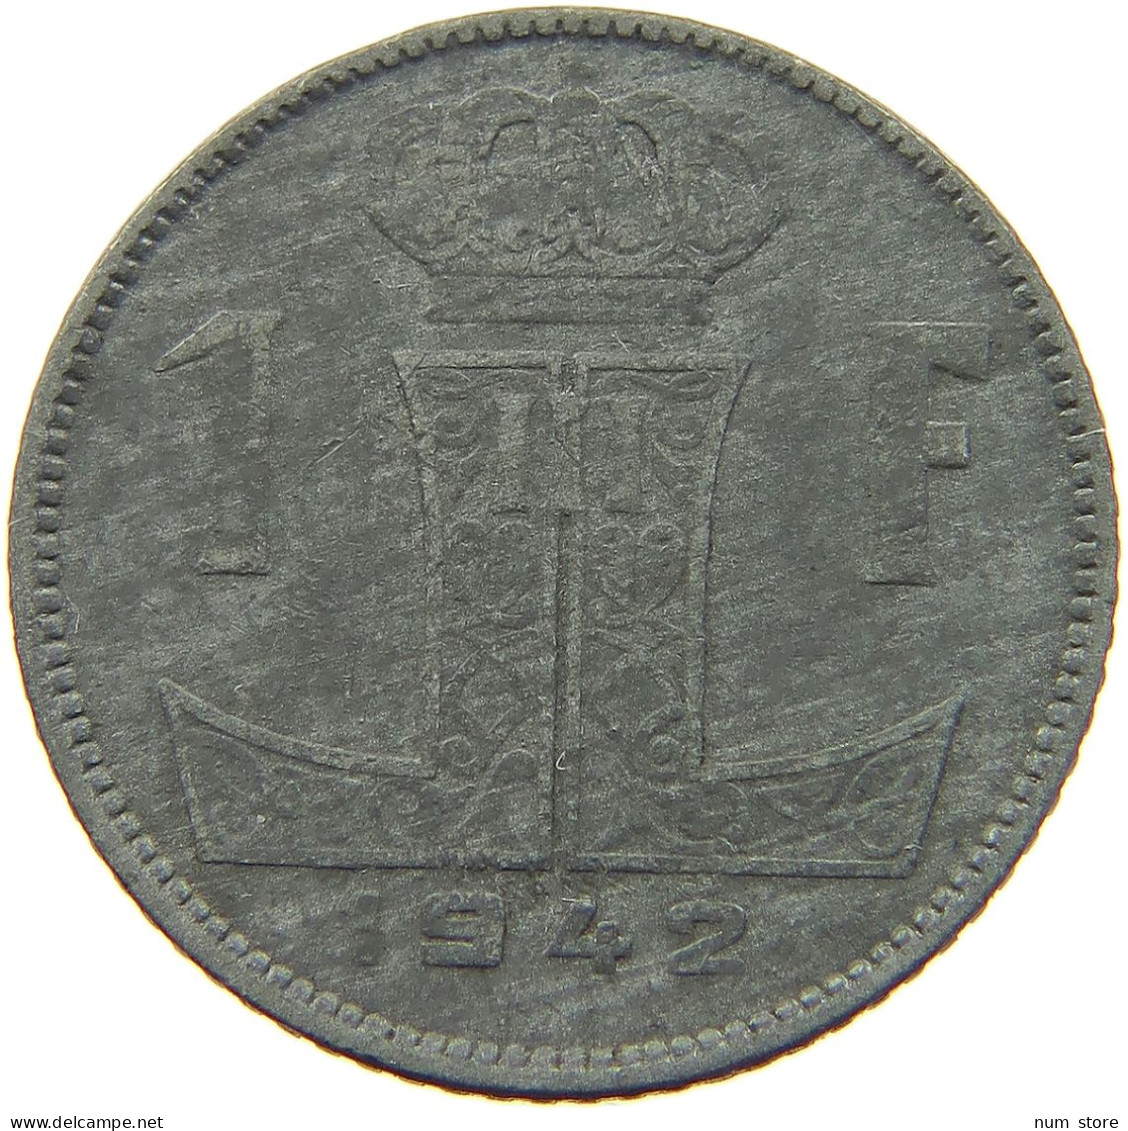 BELGIUM 1 FRANC 1942 #a006 0371 - 1 Franc